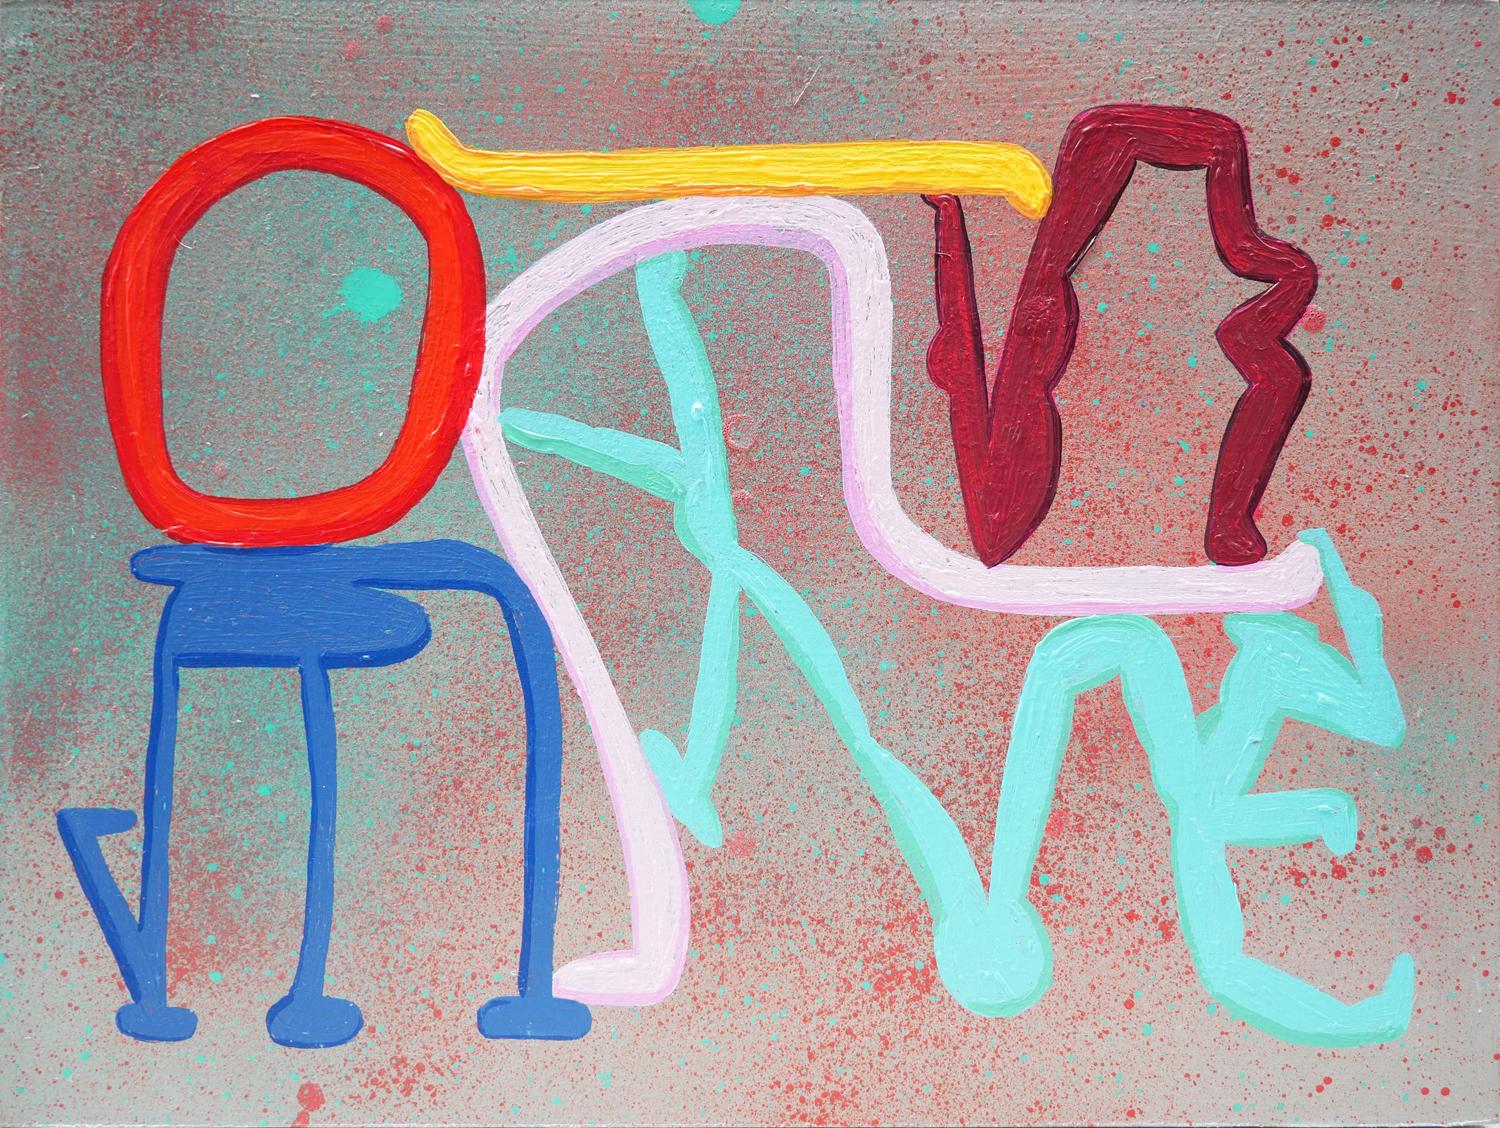 Peter Healy Abstract Painting – Abstraktes zeitgenössisches Gemälde „Standing Ovation“ in Blau, Rosa, Rot und Grau